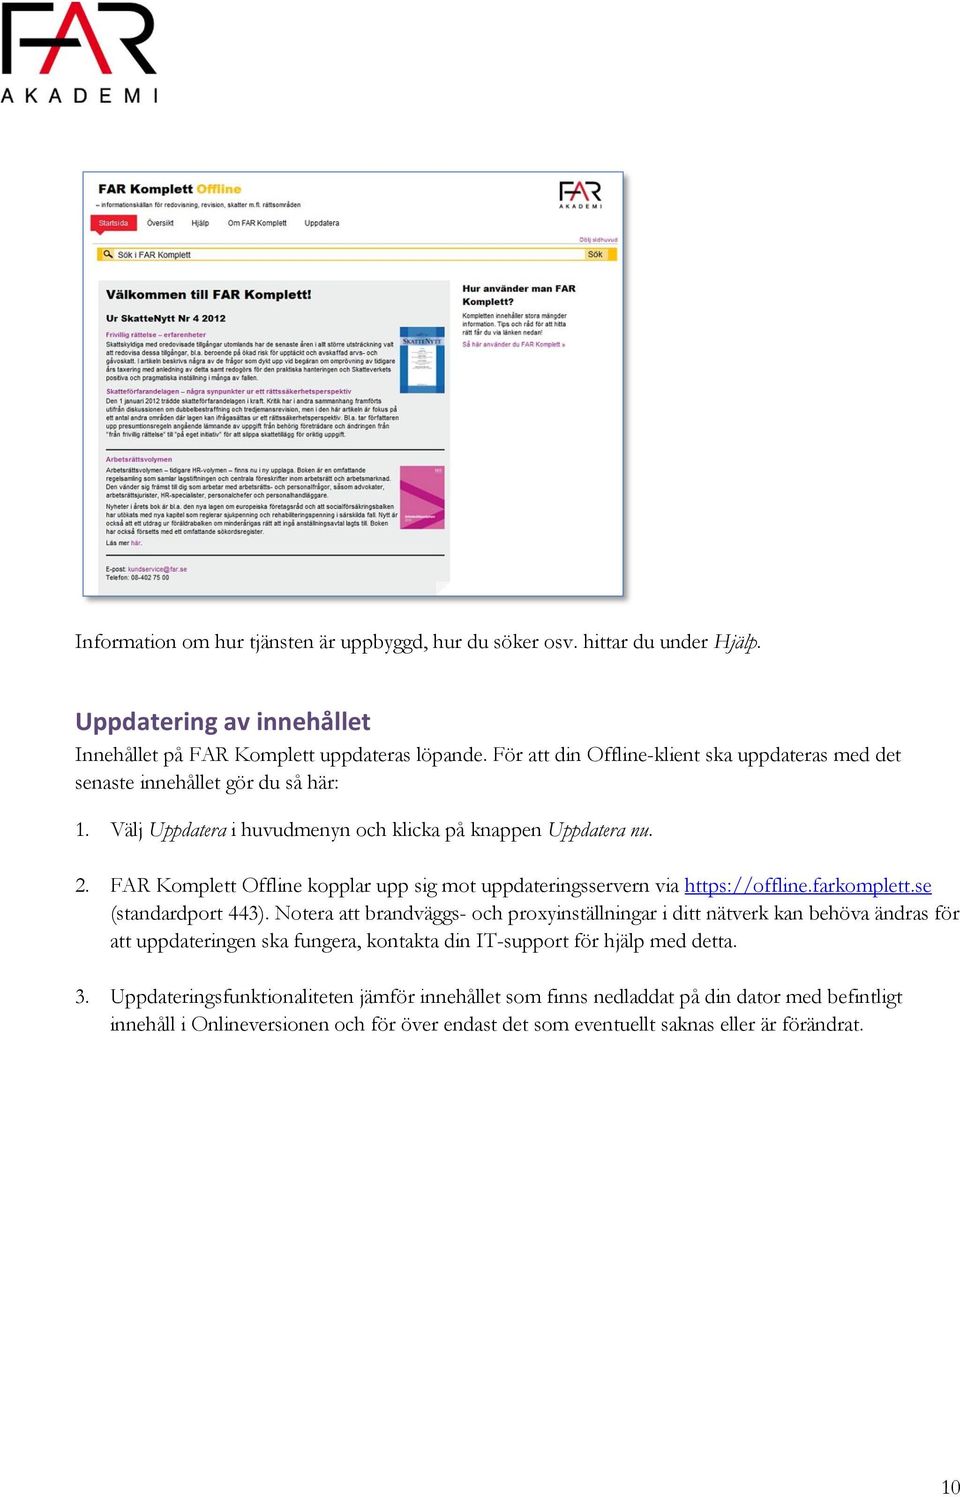 FAR Komplett Offline kopplar upp sig mot uppdateringsservern via https://offline.farkomplett.se (standardport 443).